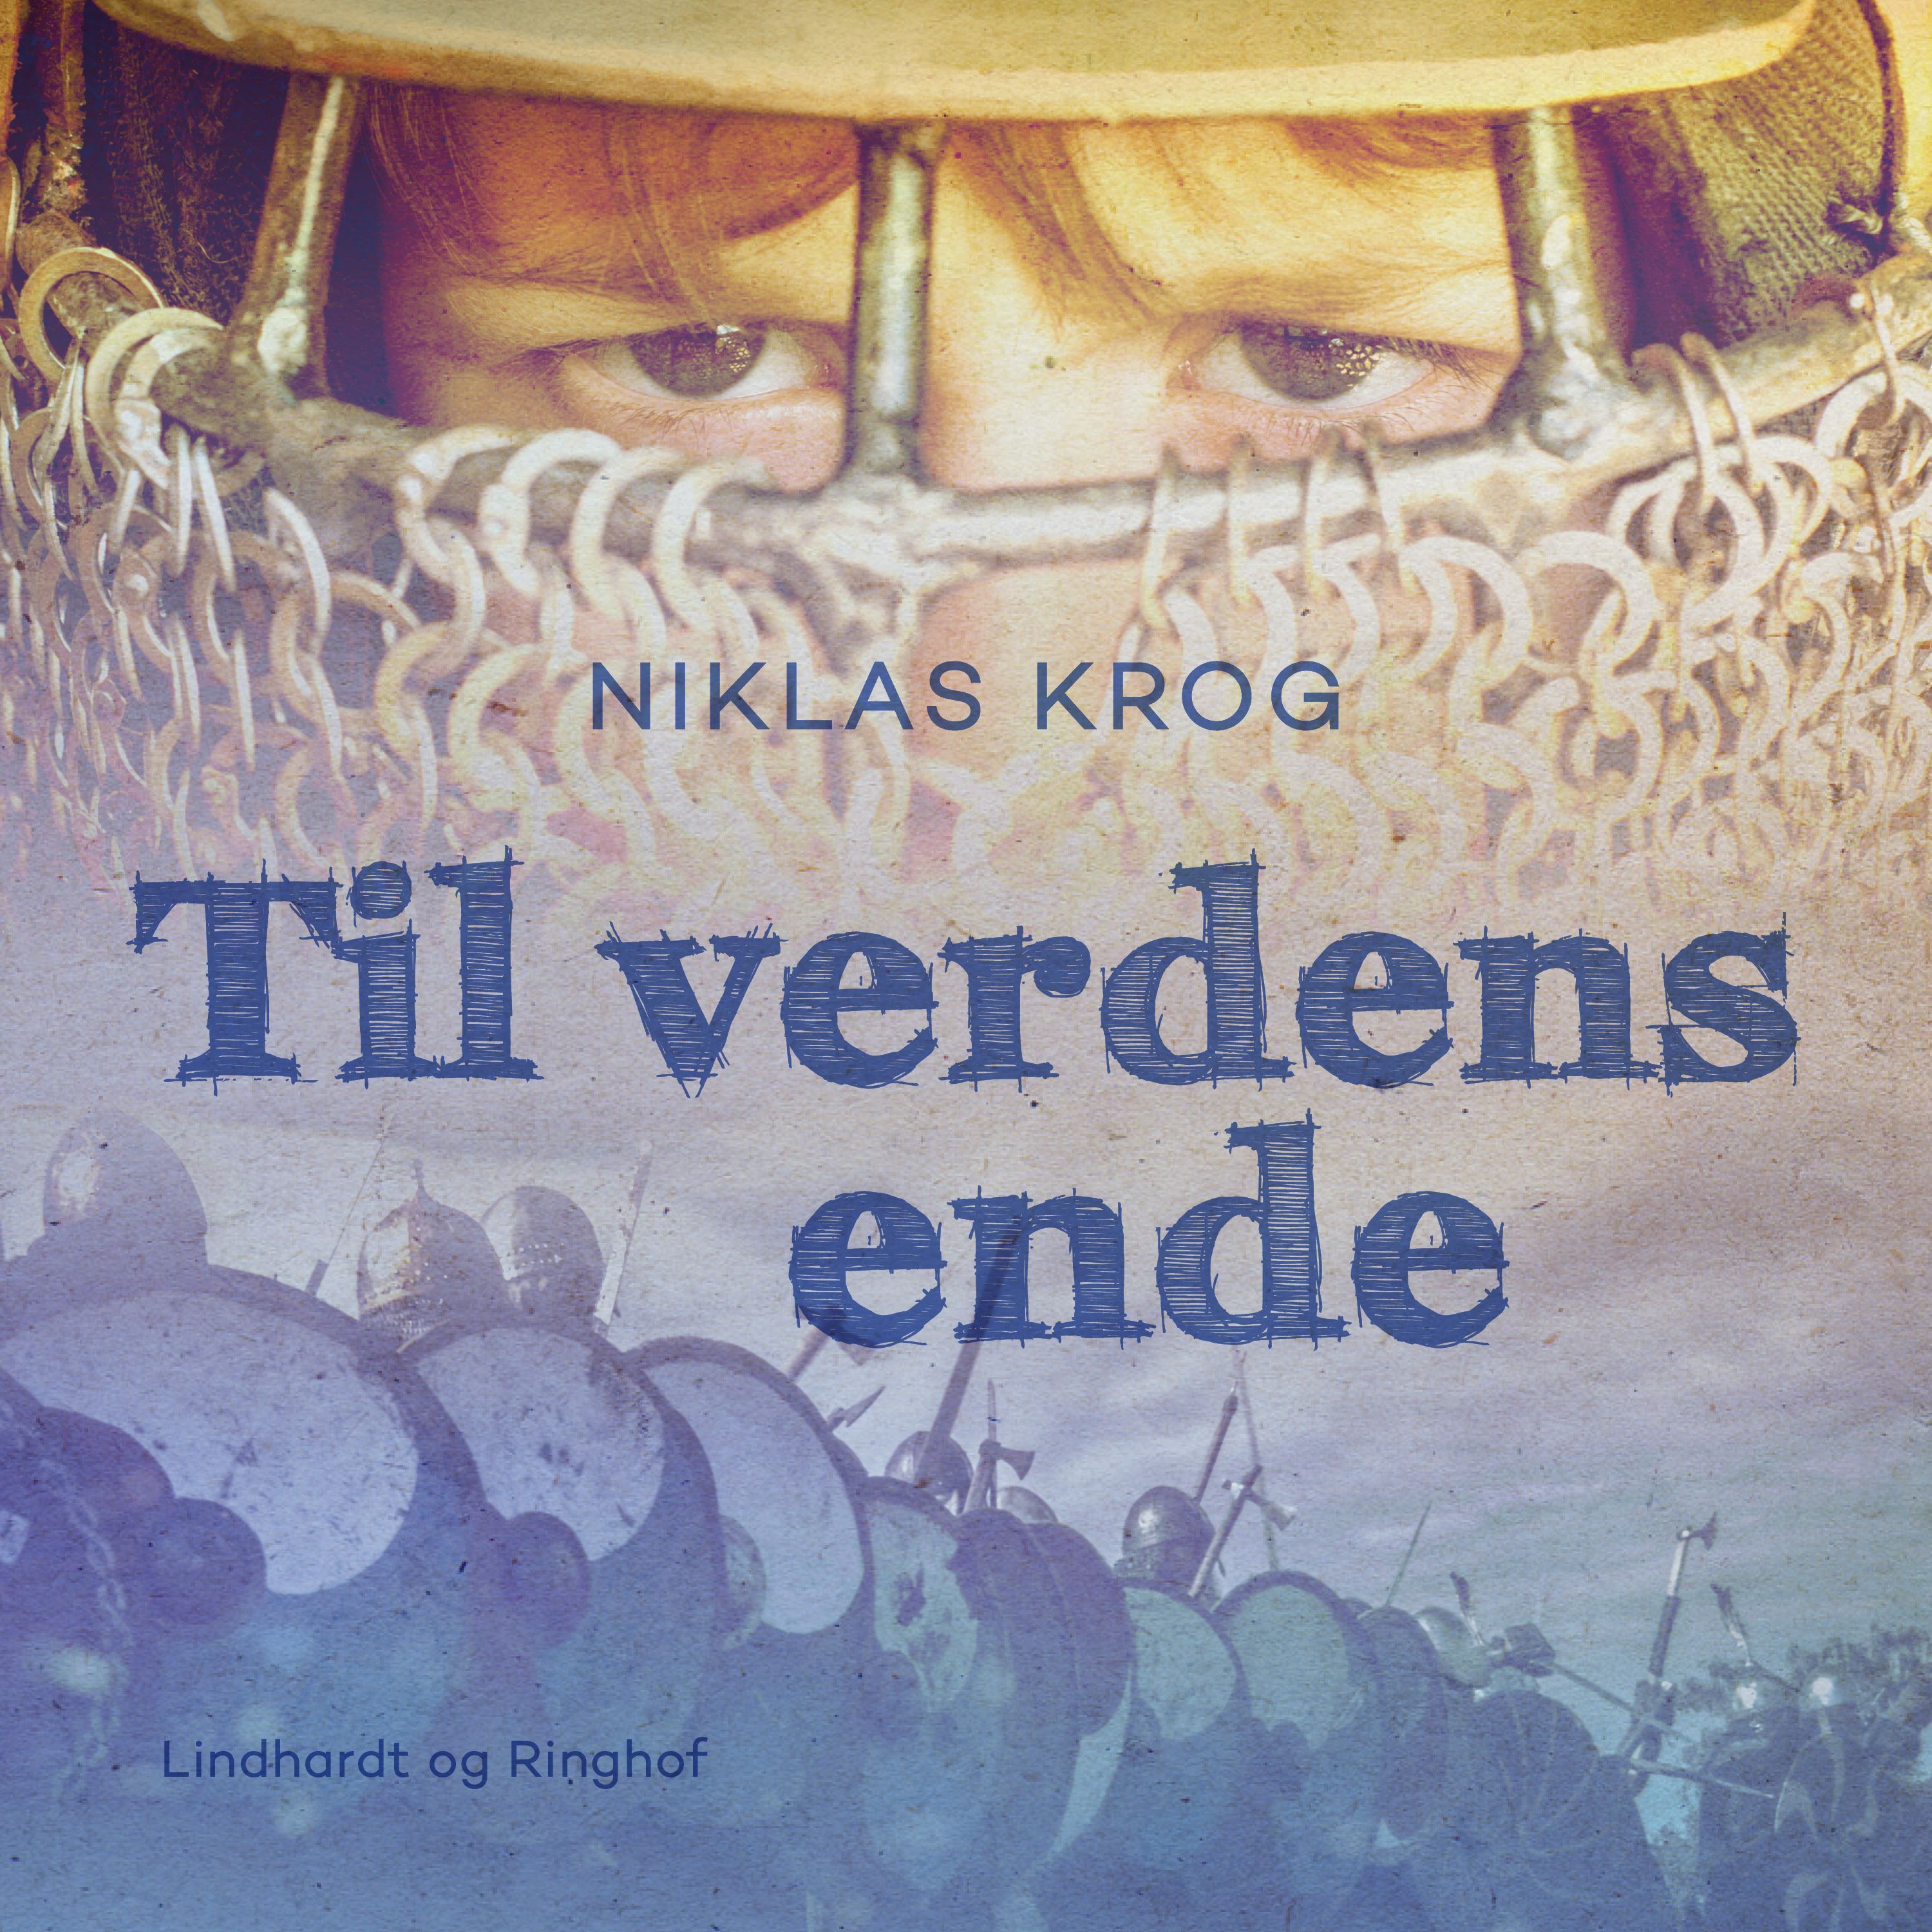 Til verdens ende, ljudbok av Niklas Krog